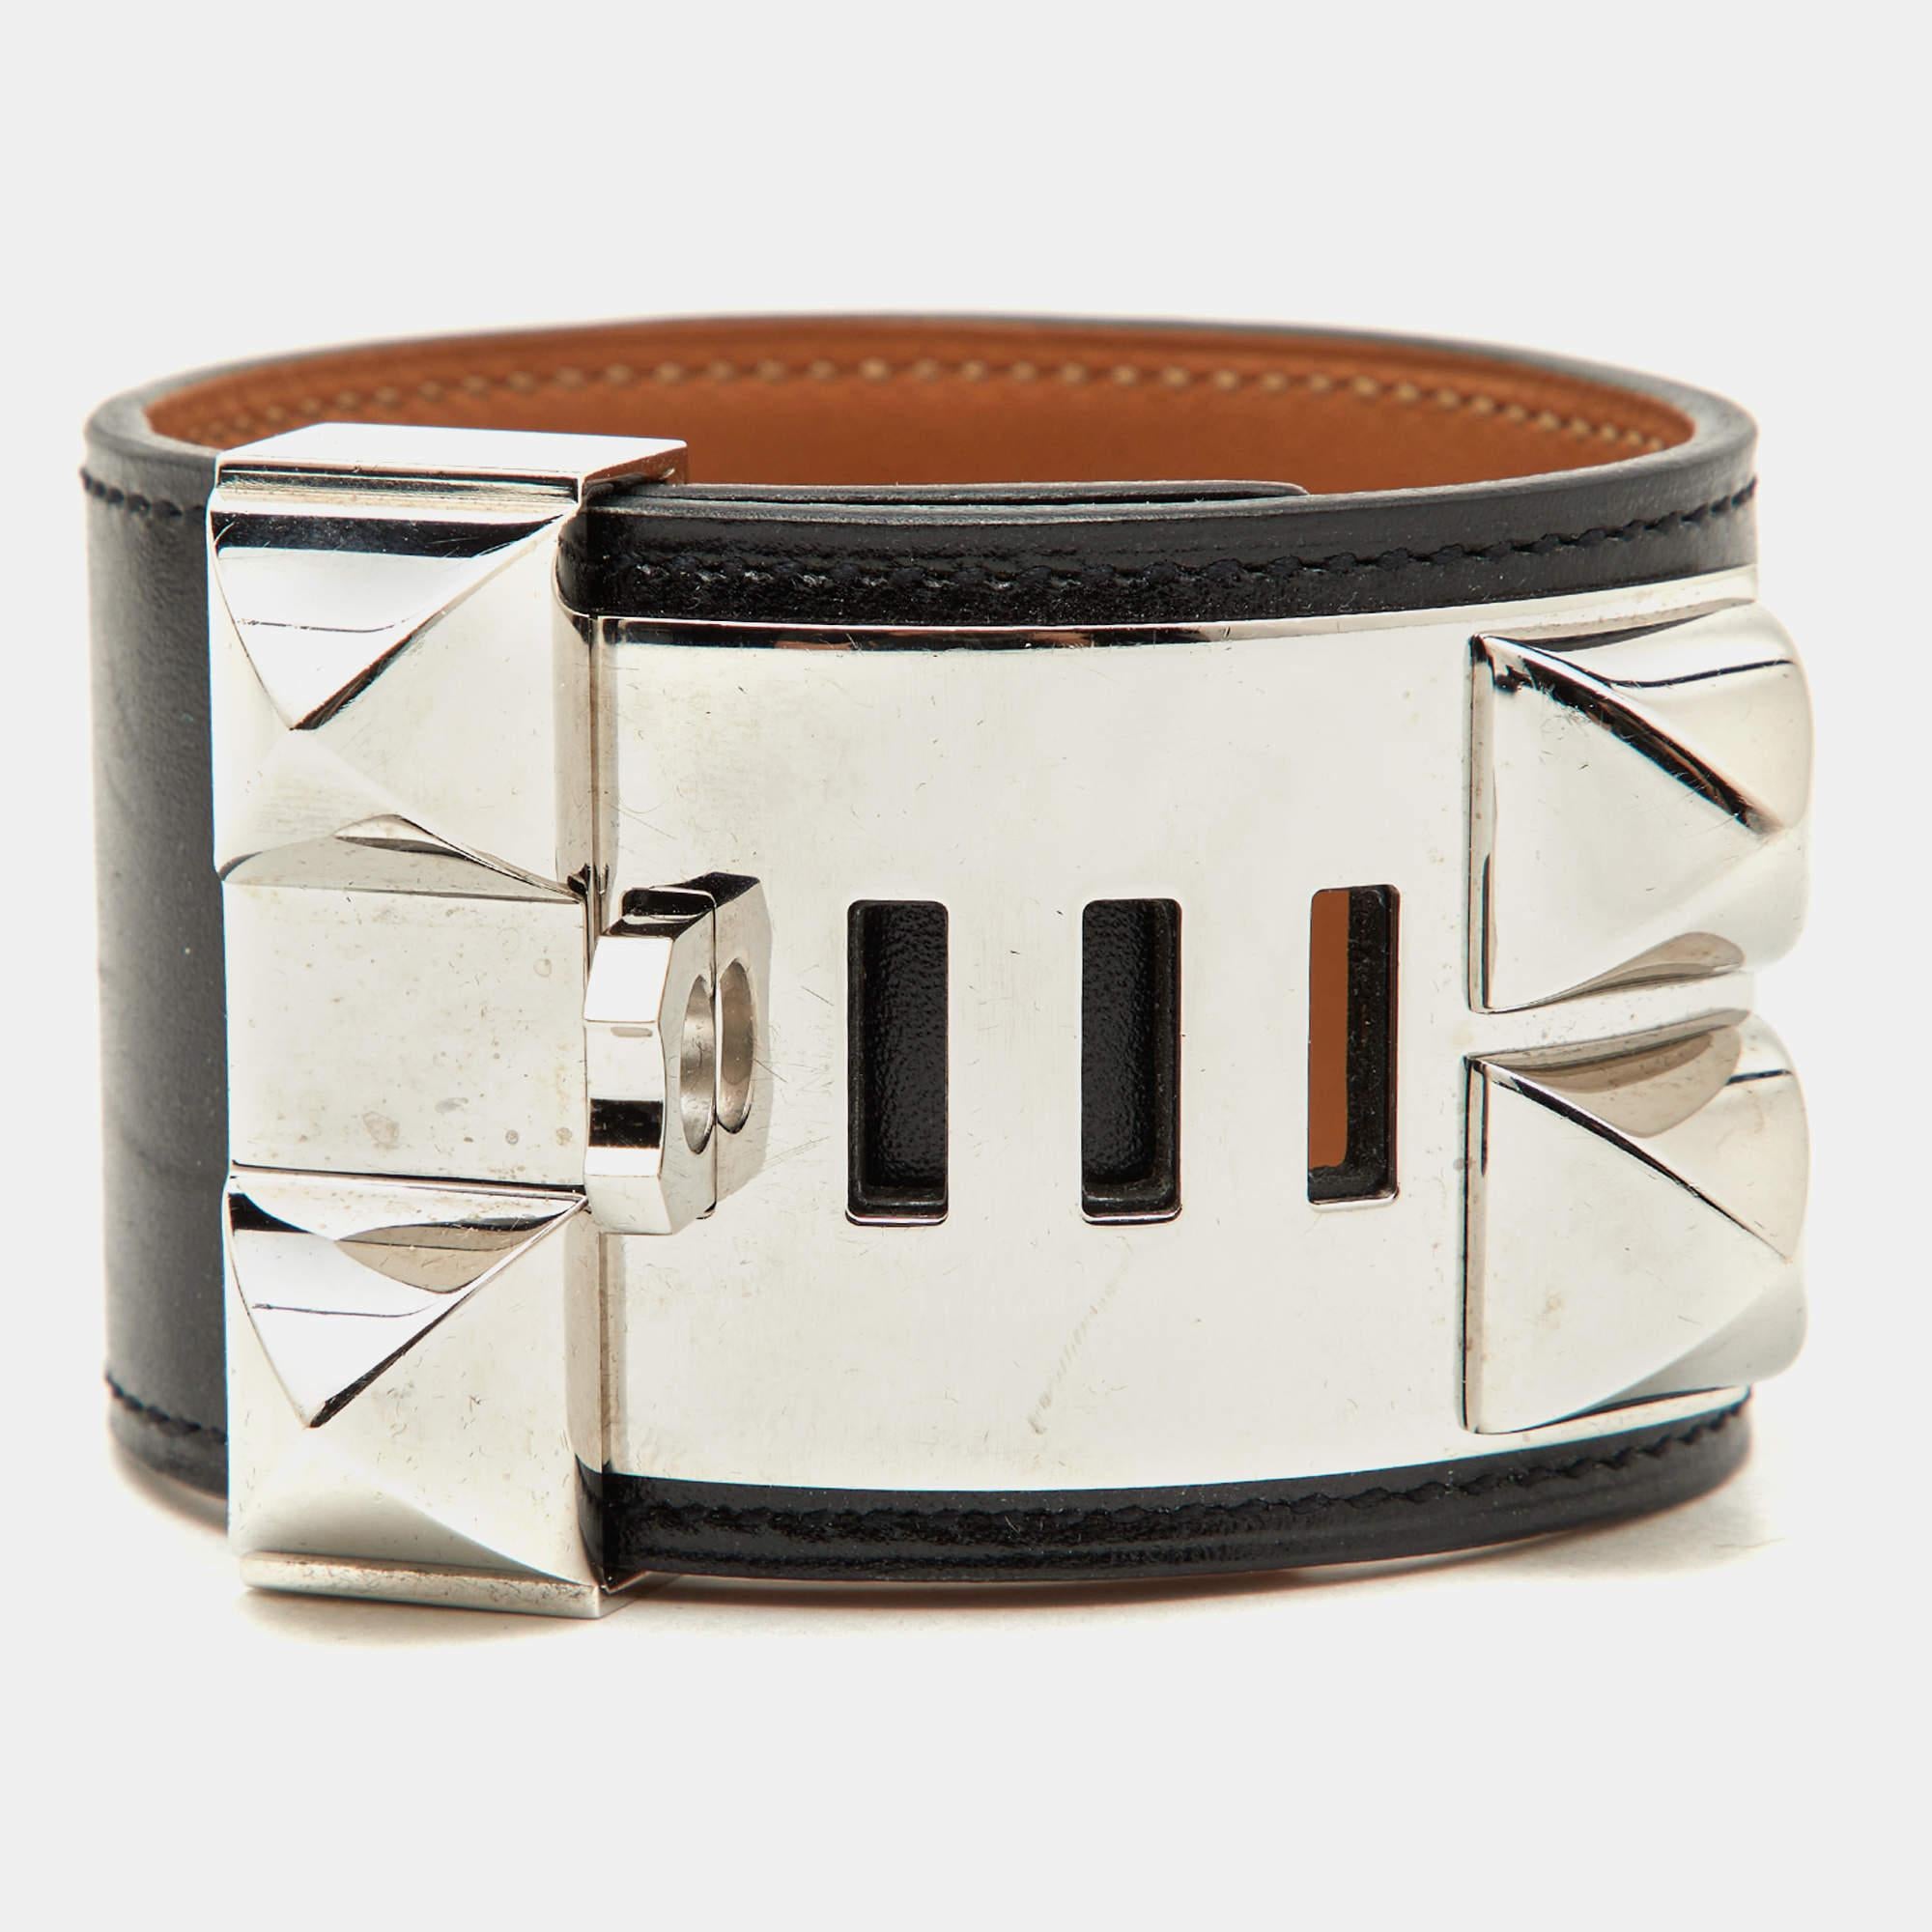 Ce bracelet immédiatement reconnaissable est issu de la collection signature Collier de Chien d'Hermès. Le bracelet, en cuir noir, est orné du motif iconique Collier de Chien en métal palladié impliquant des clous pyramidaux et un anneau. Il est